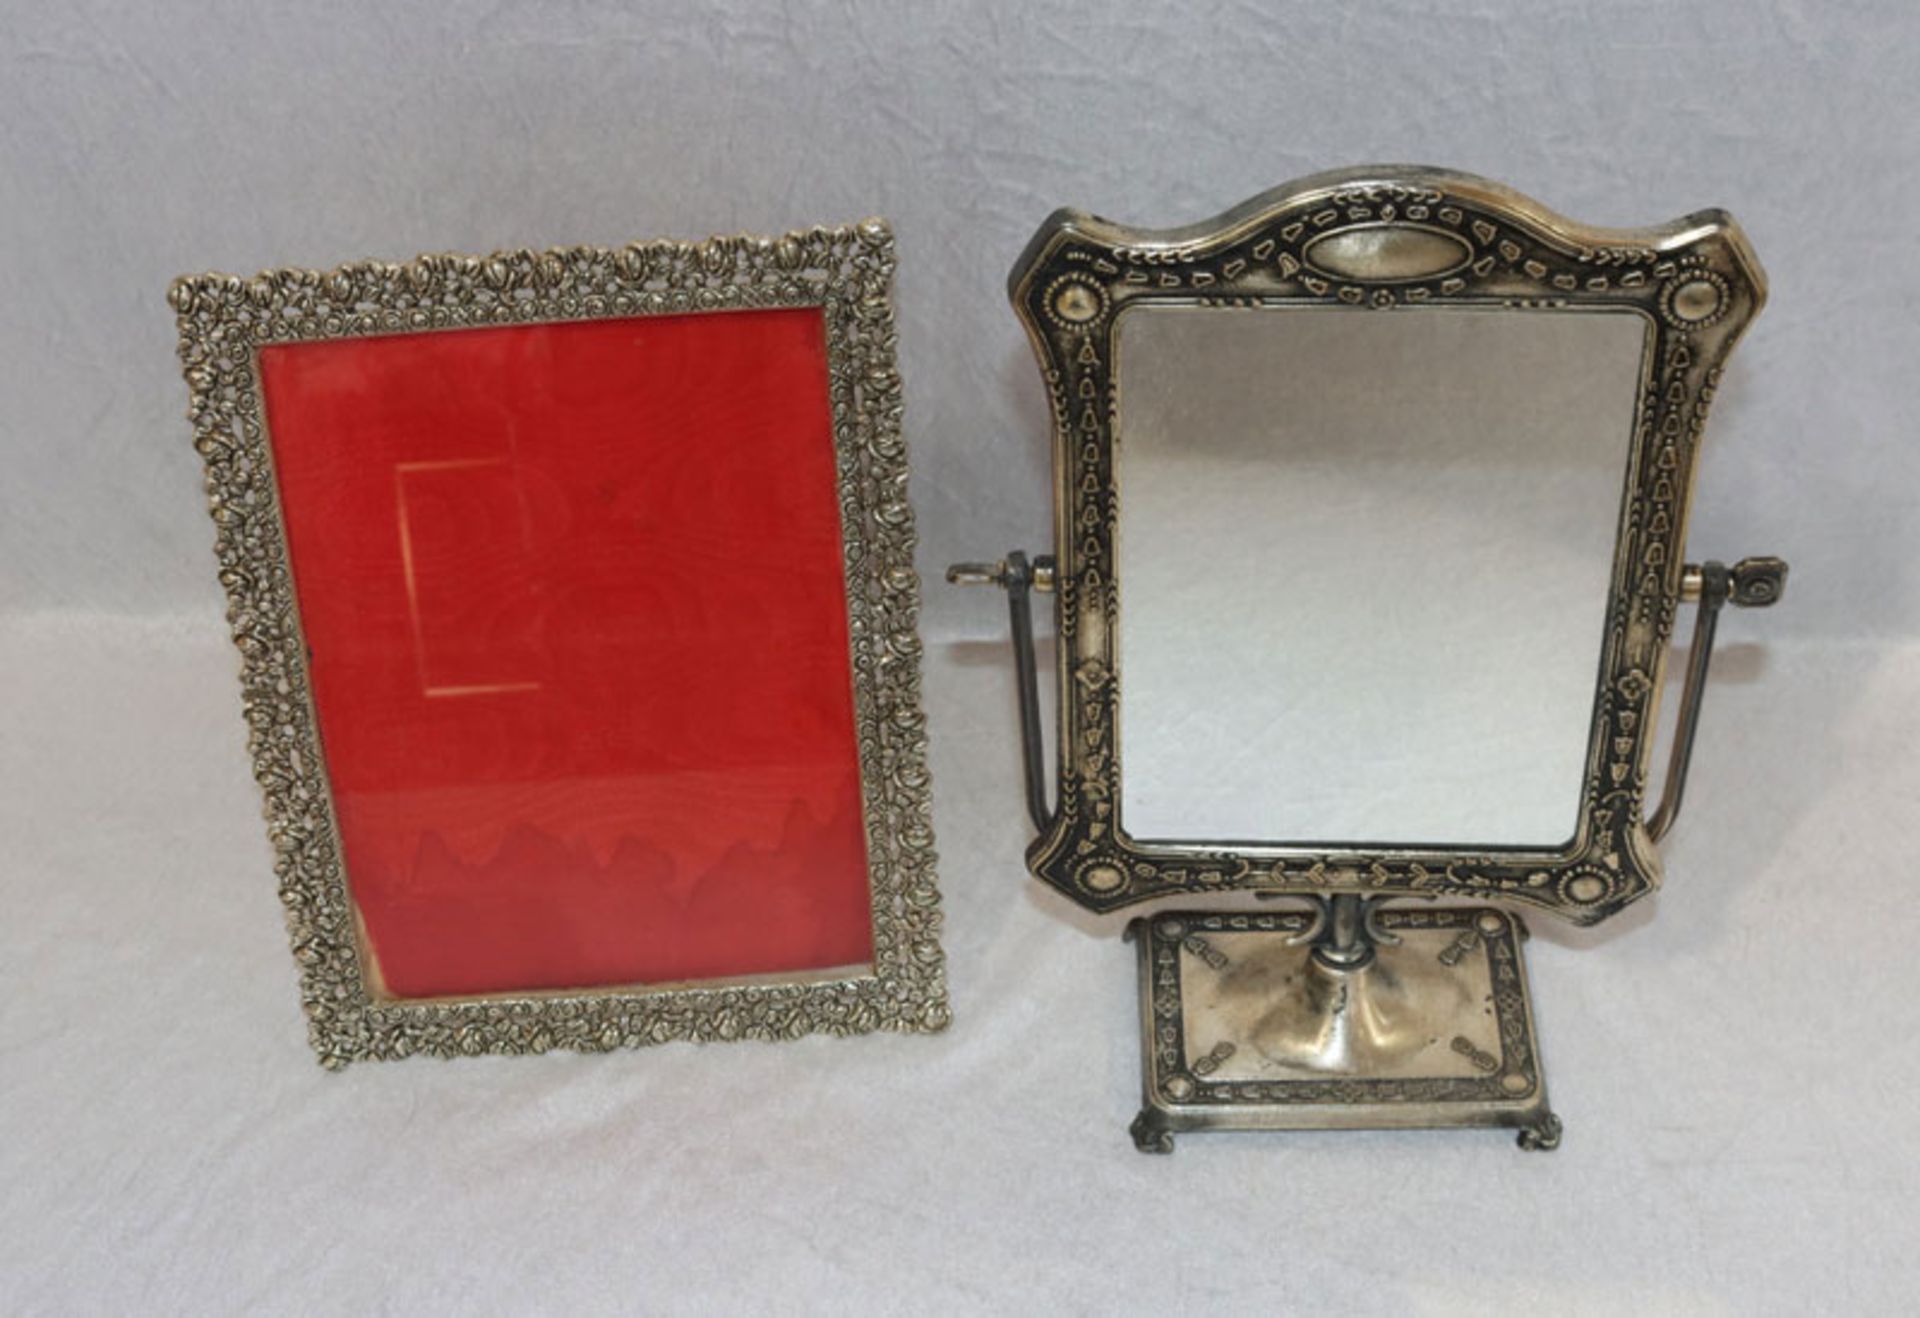 Tischspiegel, klappbar, H 34 cm, B 24 cm, T 11 cm, und Fotorahmen mit reliefiertem Randdekor, H 28